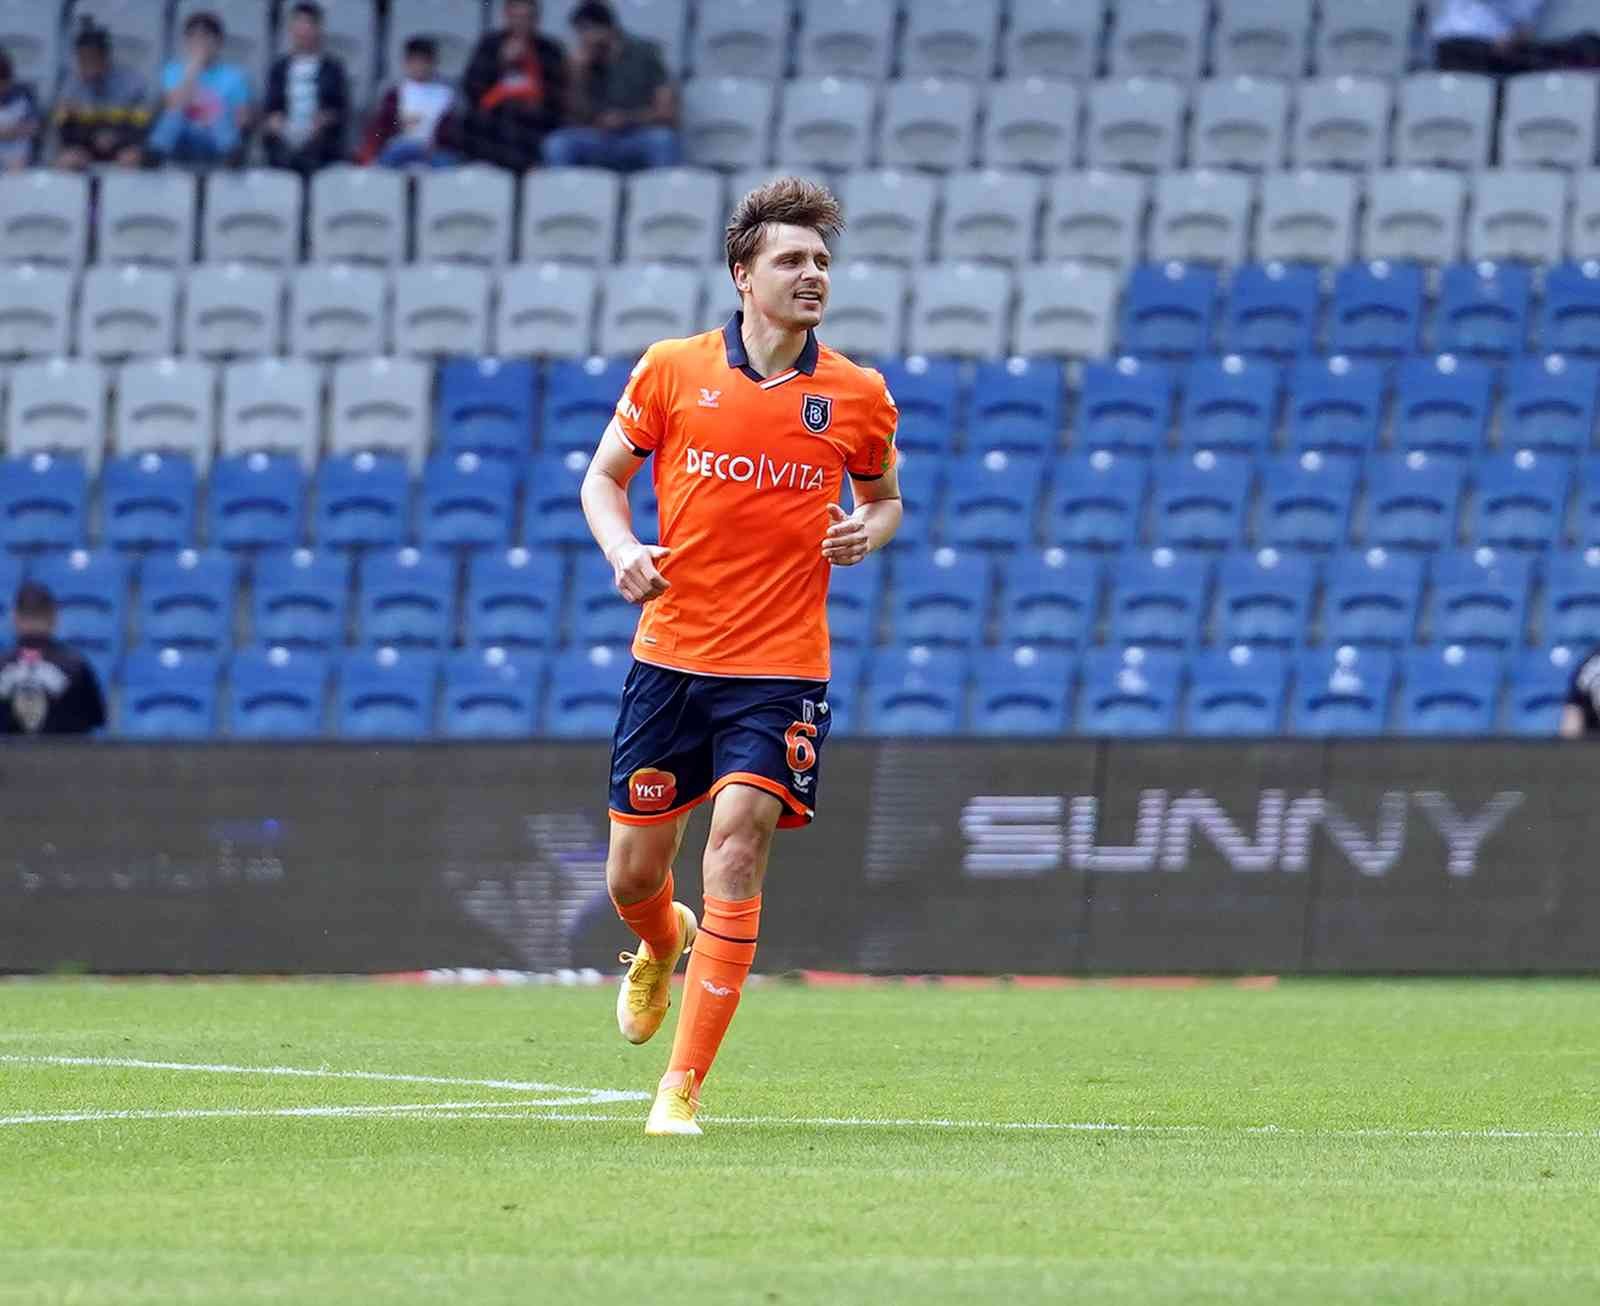 Spor Toto Süper Lig’in 38. ve son haftasında Medipol Başakşehir evinde Trabzonspor ile karşılaşıyor. Mücadelenin ilk yarısı turuncu ...